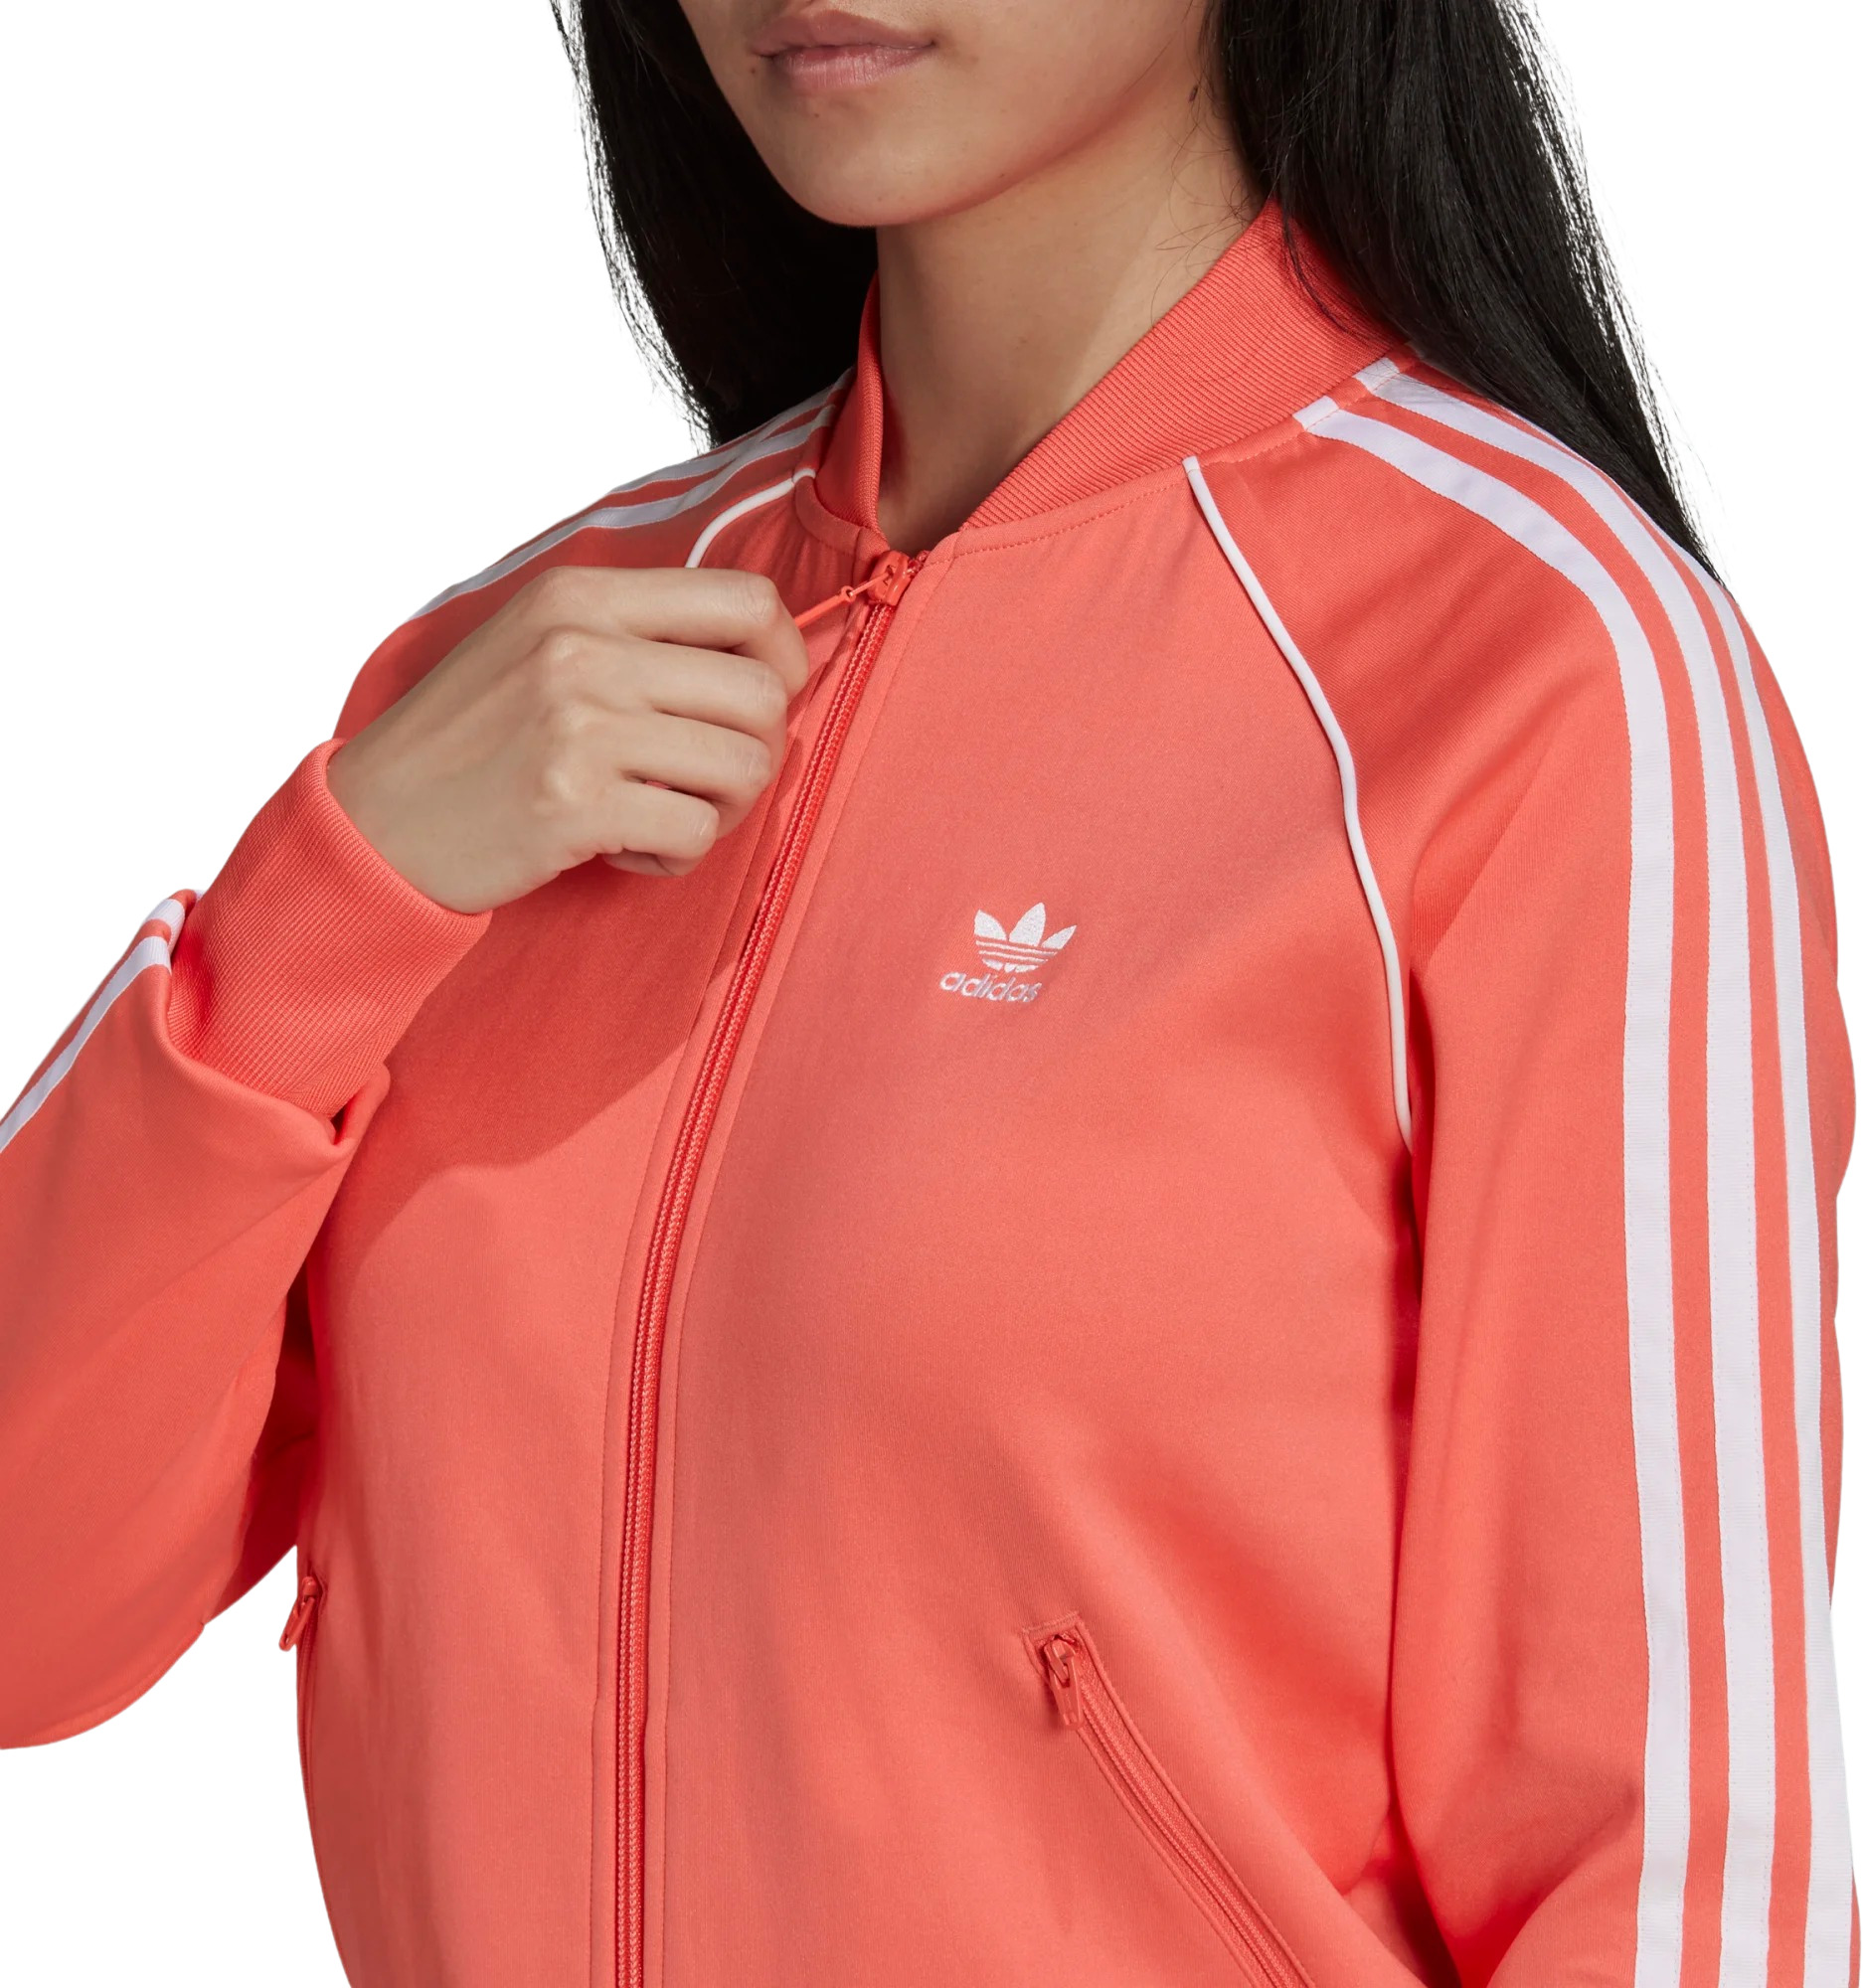 Олимпийка Adidas Primeblue Sst (HE9564) купить за 8 699 руб. в интернет-магазине